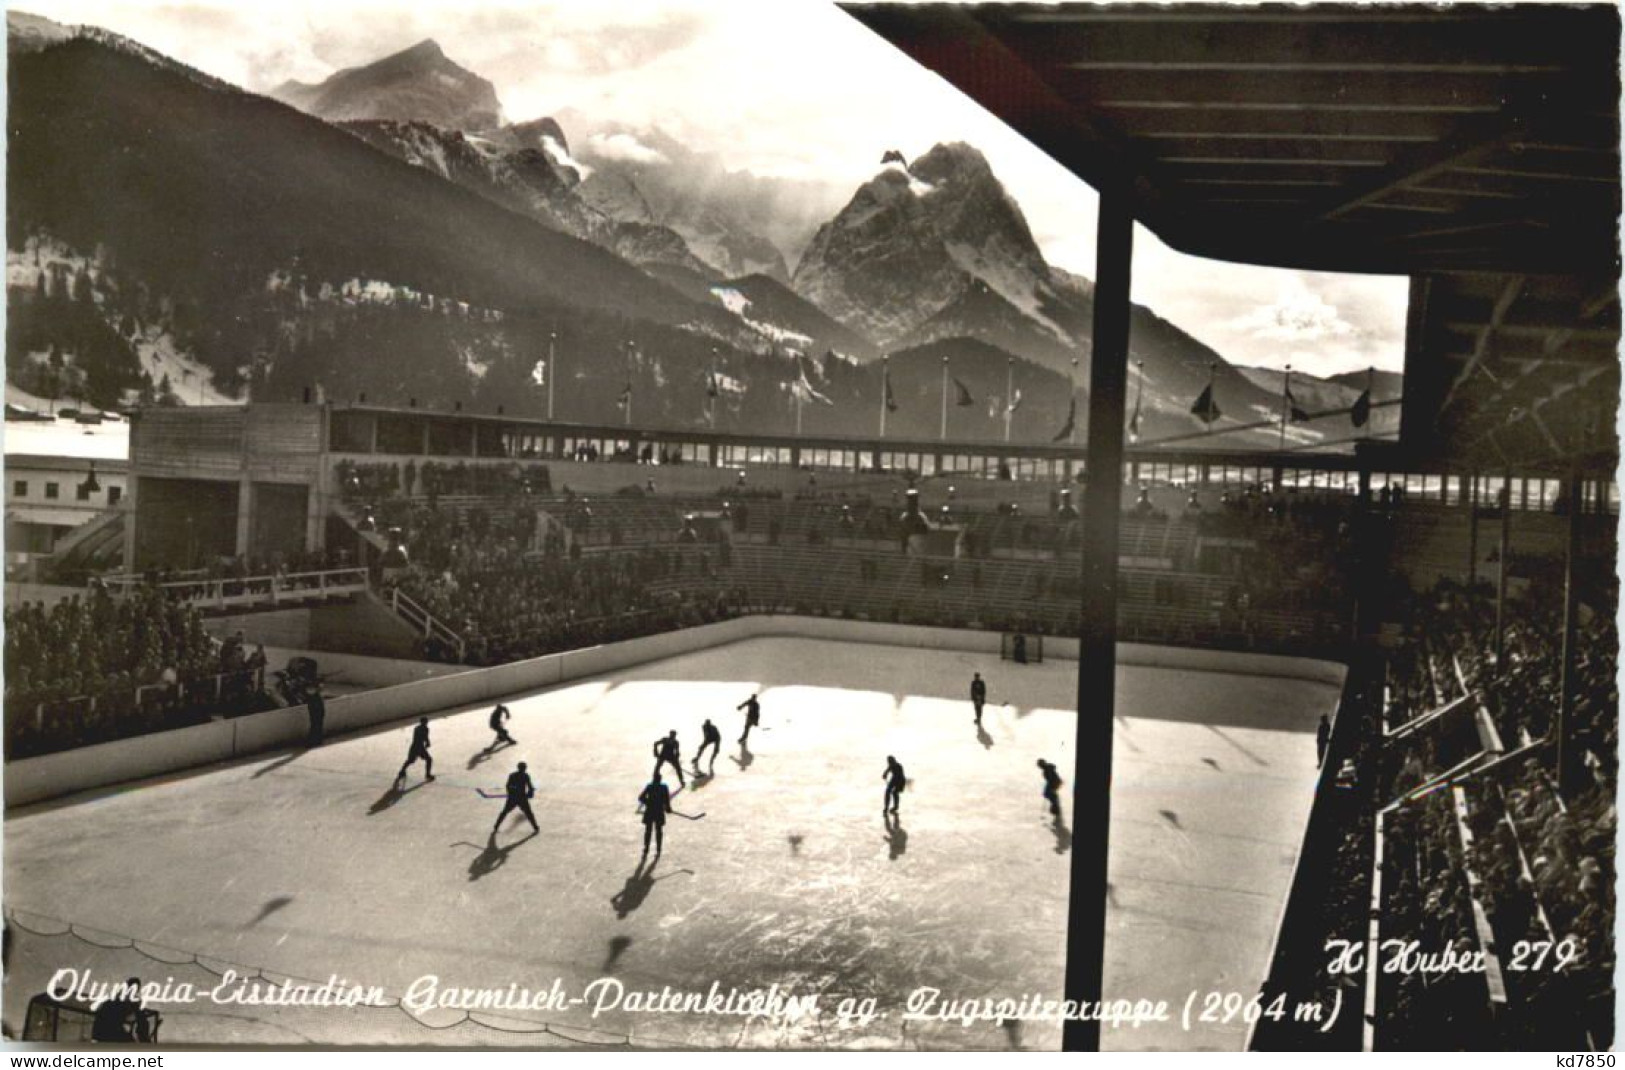 Garmisch-Partenkirchen - Olympia Eisstadion - Garmisch-Partenkirchen